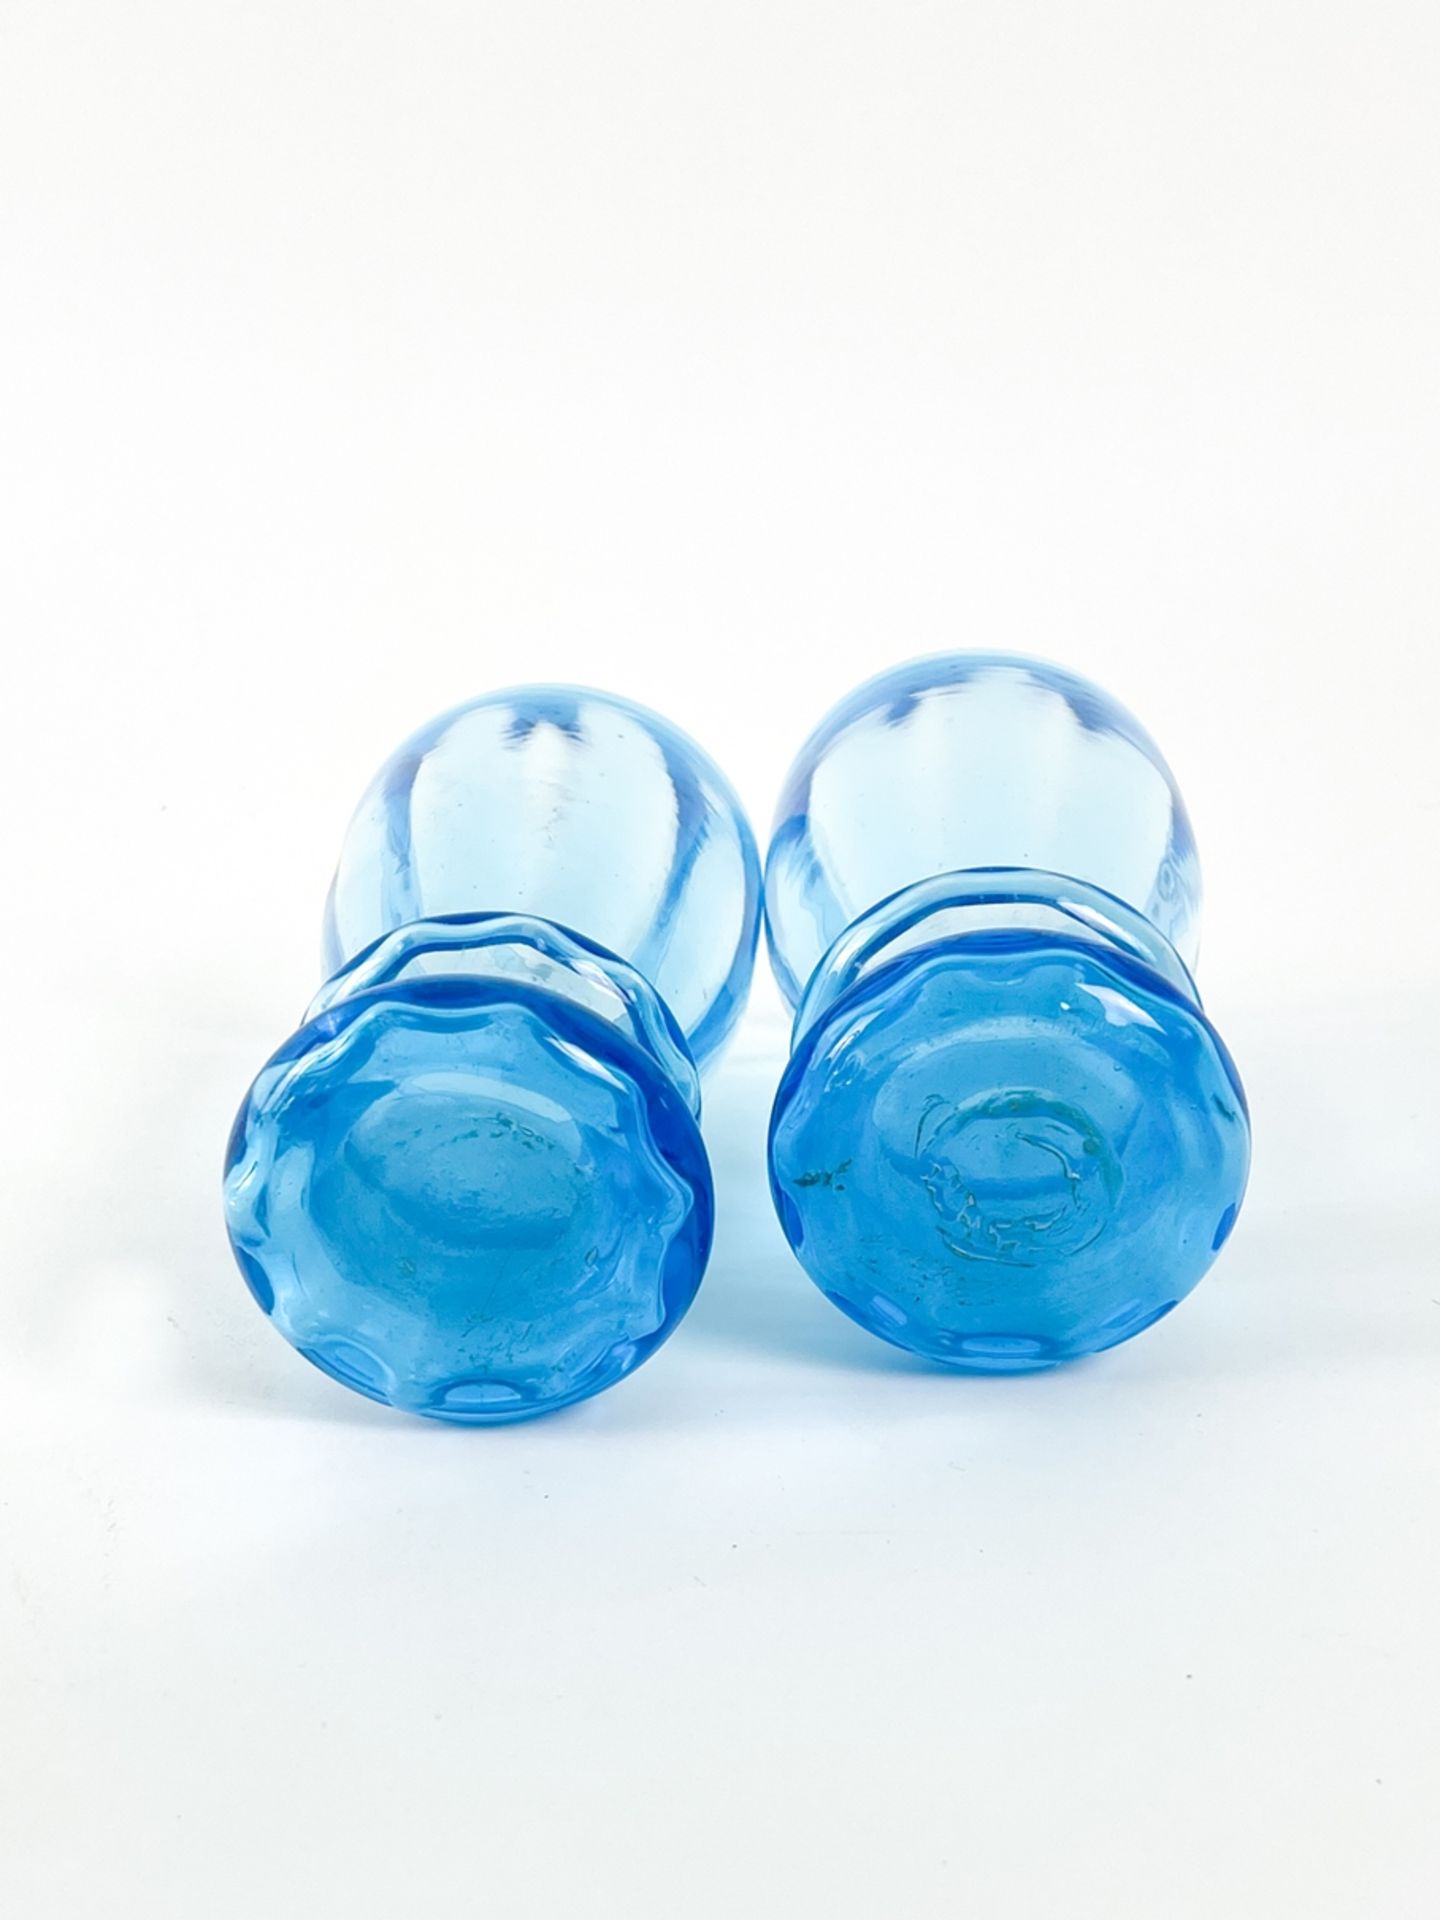 Blauer Glaskrug mit zwei Bechern - Image 7 of 7